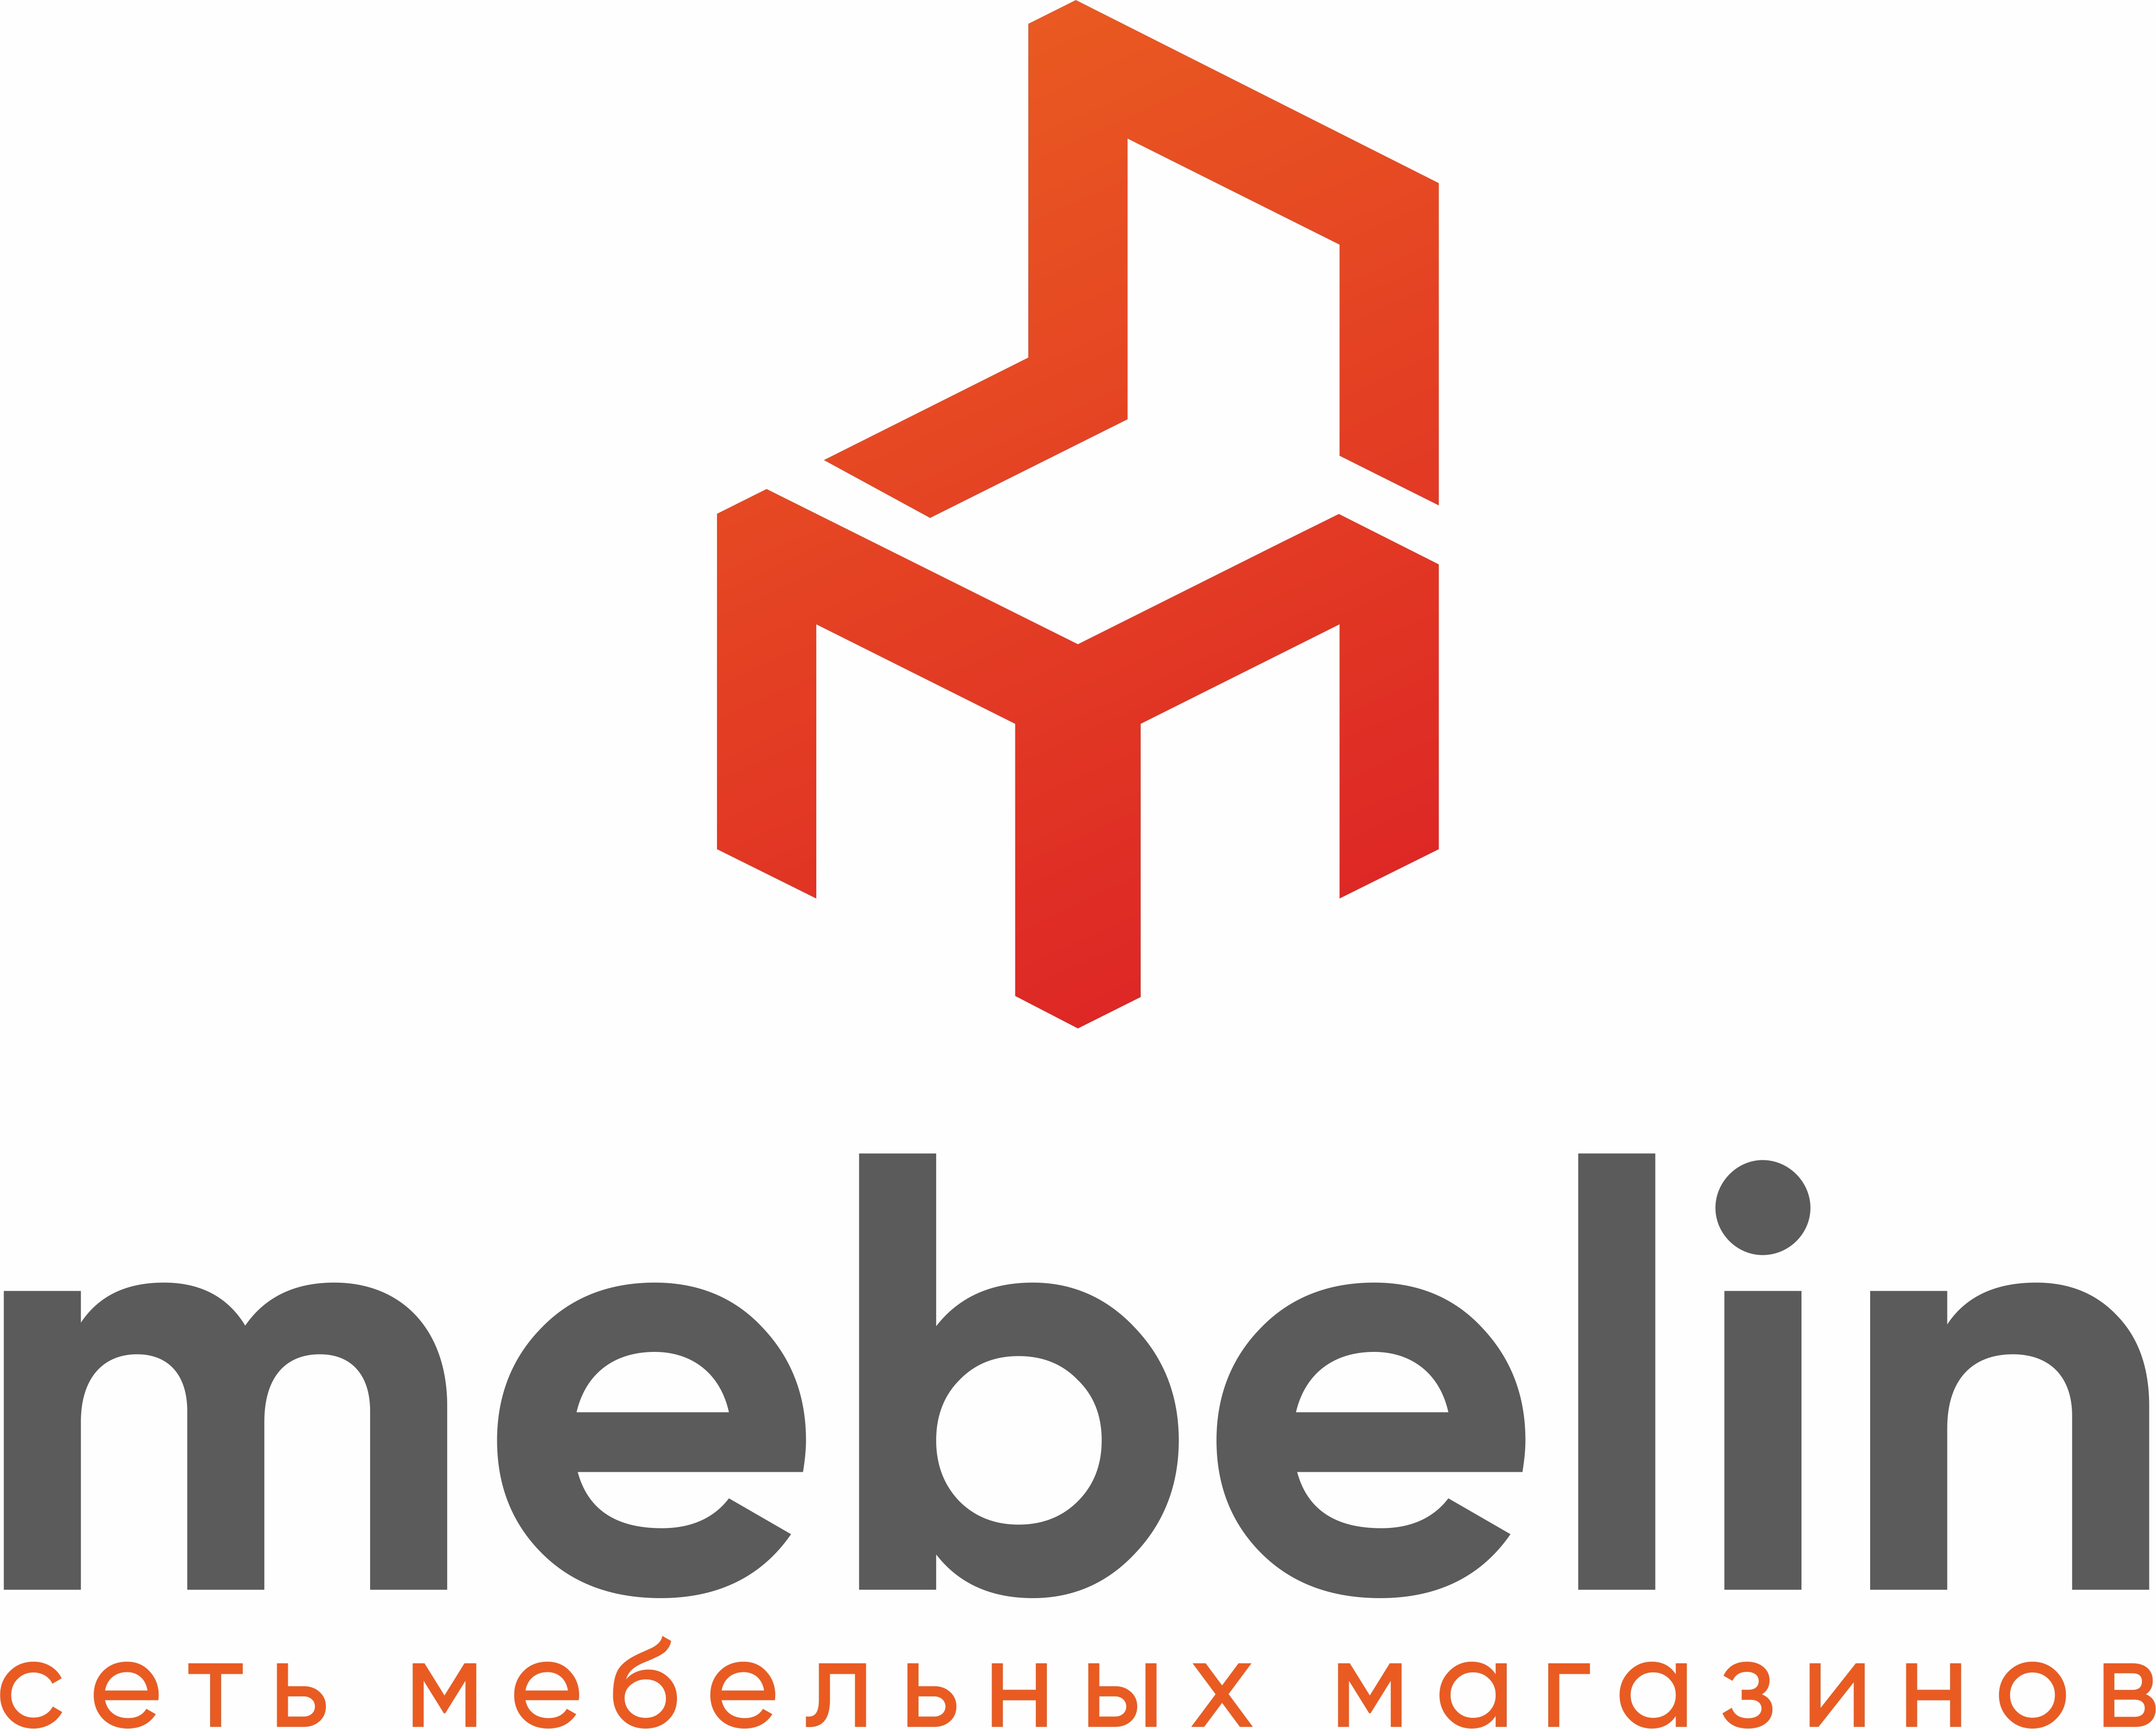 Market kg. Бауфлекс мебель Бишкек. Bauflex logo. Bauflex.